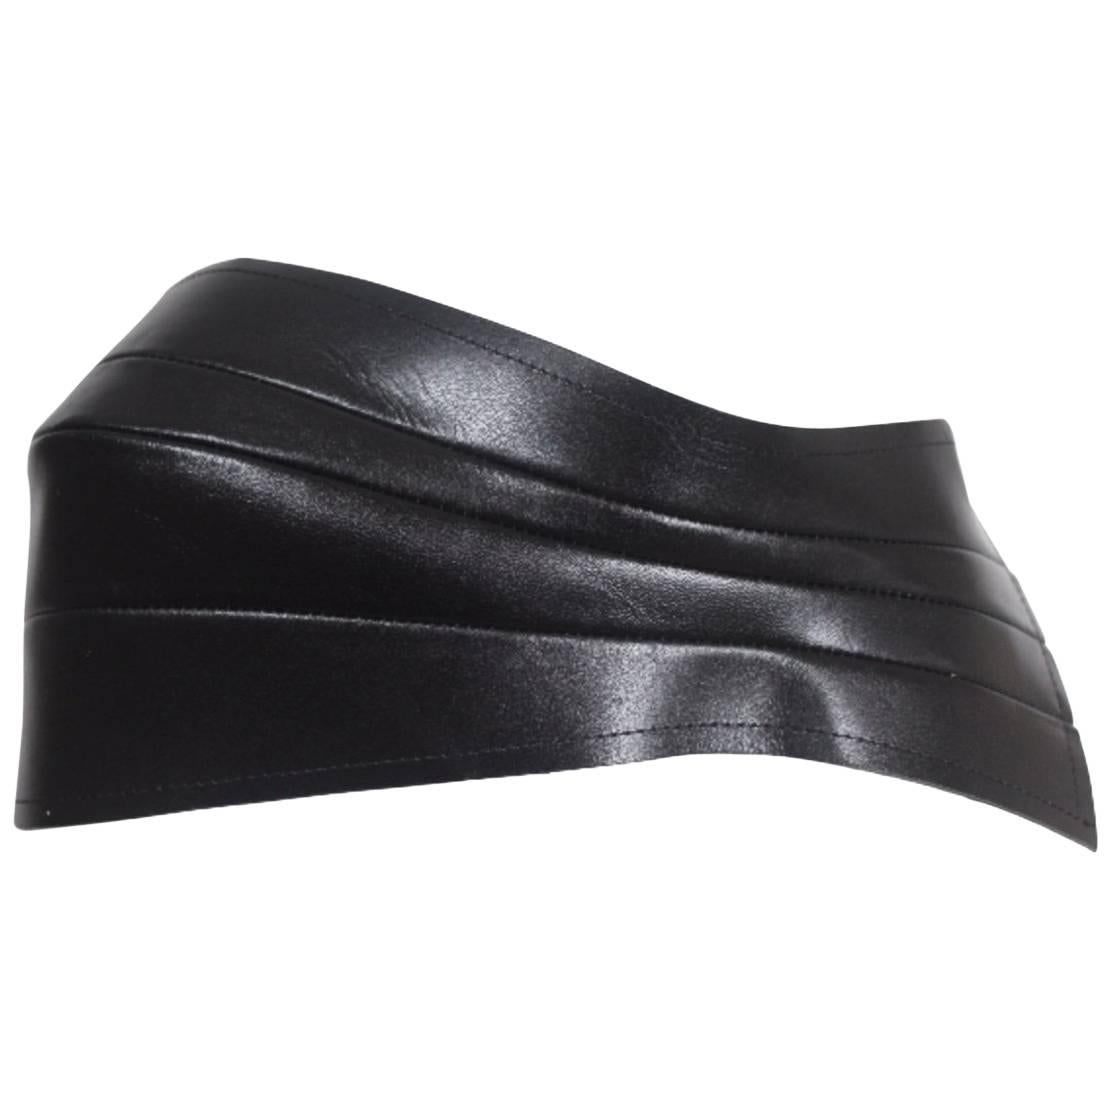 Comme des Garcons 2010 Collection Leather Belt